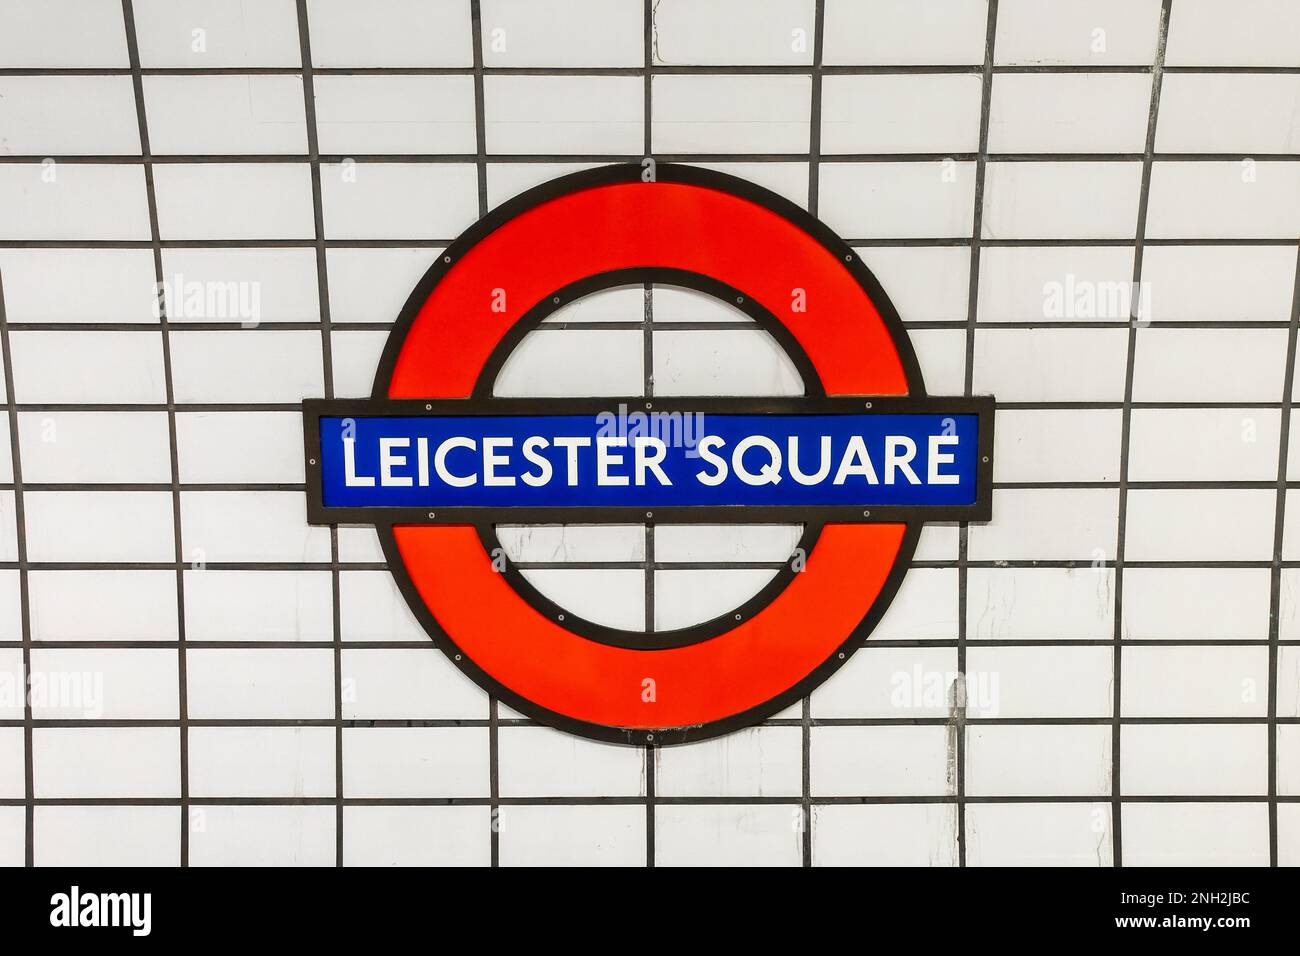 Panneau de métro Leicester Square bleu et rouge sur fond de tuiles blanches, station de métro à Londres, Royaume-Uni Banque D'Images